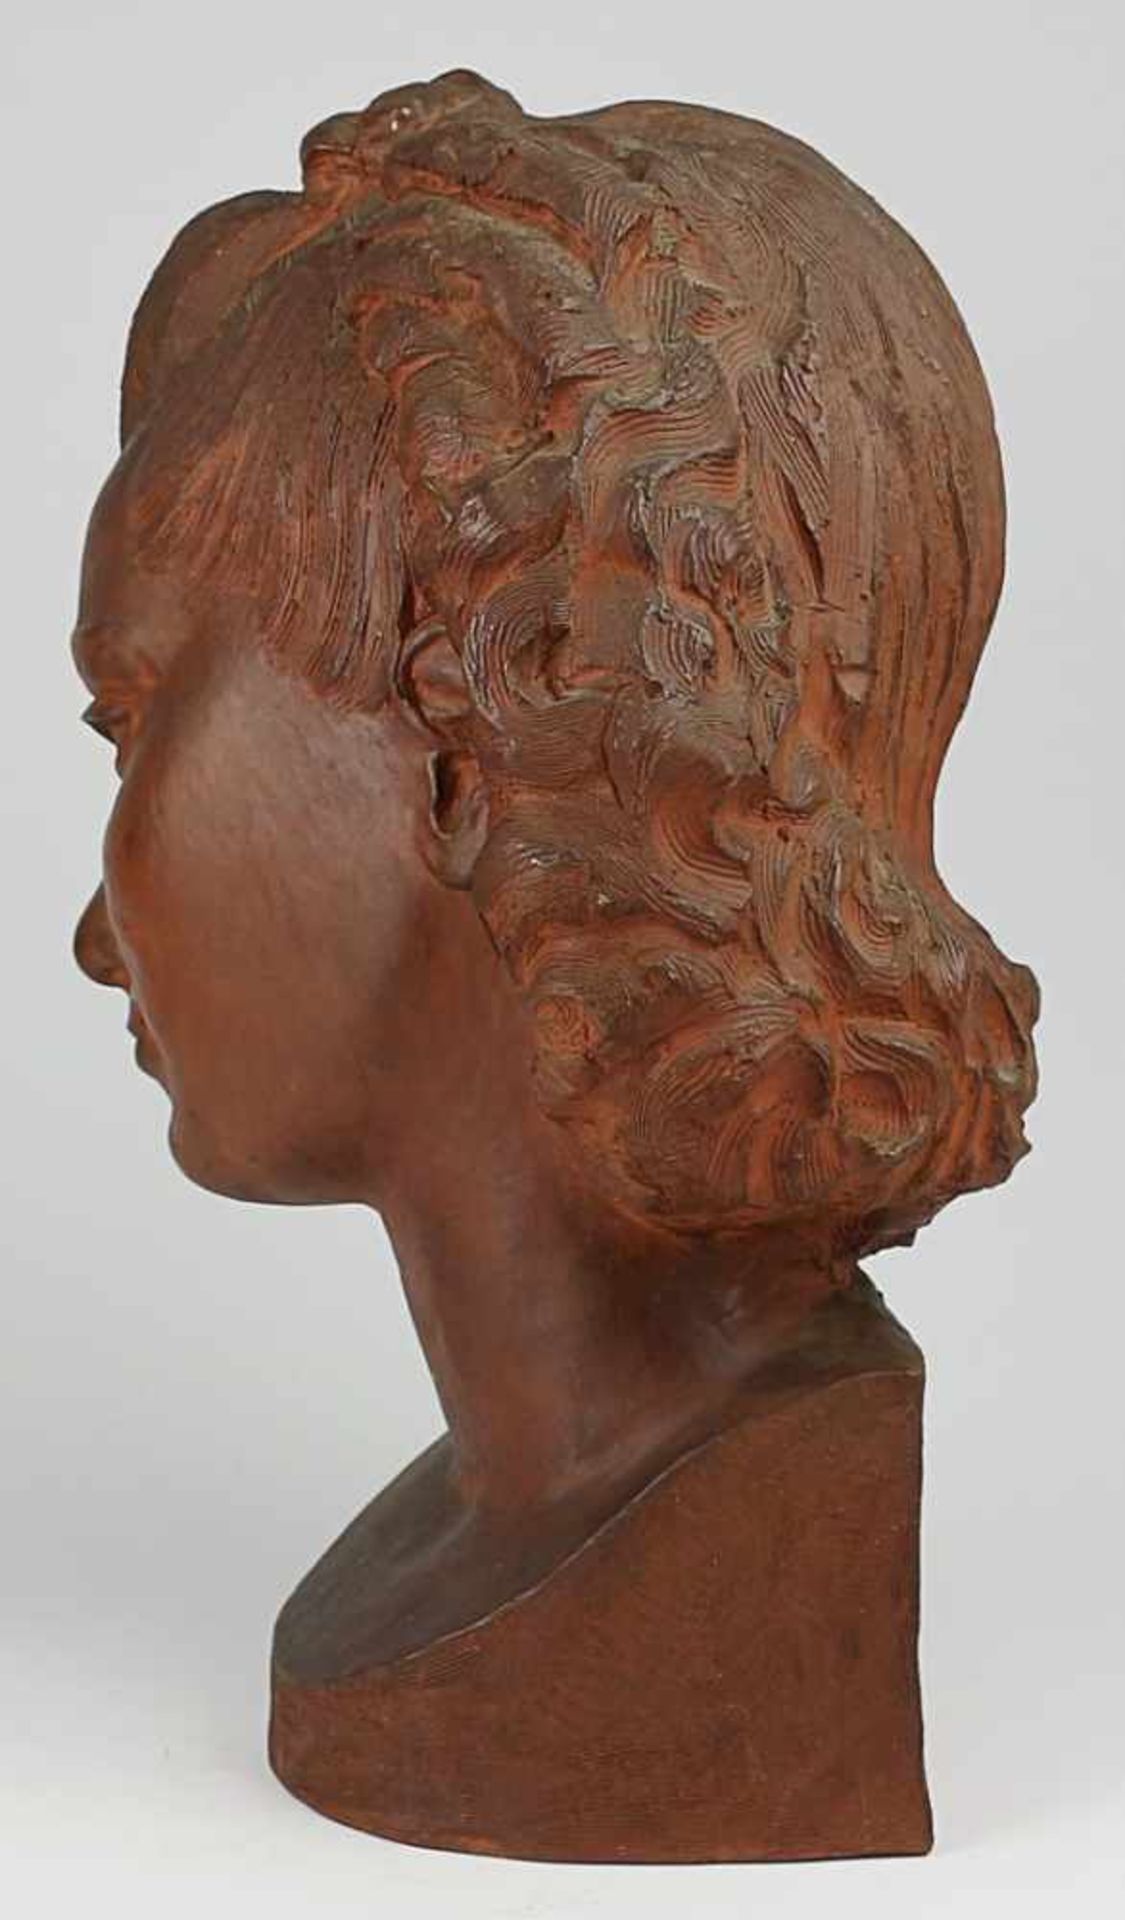 Gerz-Schenk, Herta - Skulptur 1940erJahre, rs. sign.,1943, roter Scherben, Frauenkopf mit - Bild 4 aus 6